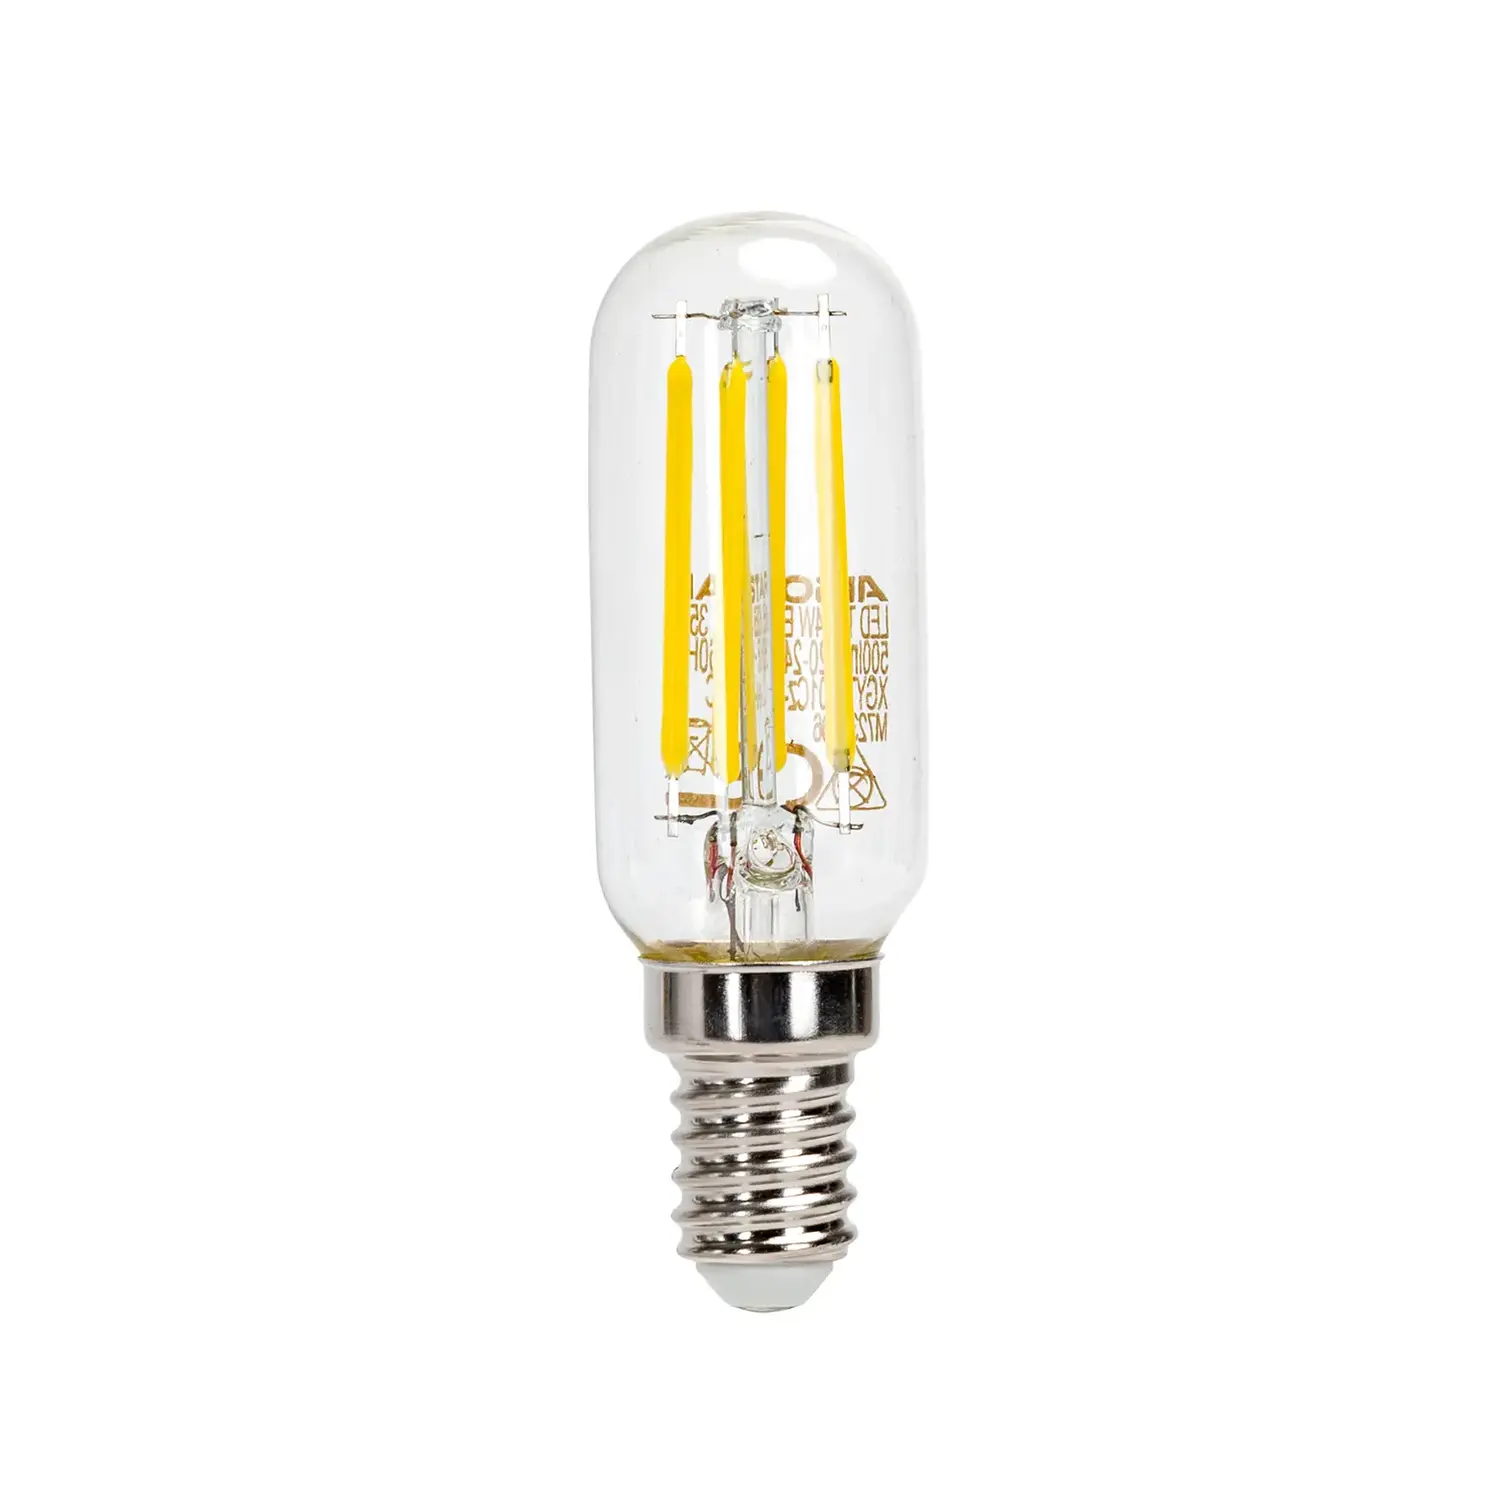 immagine del prodotto lampadina per cappa a led T25 lampada e14 4 watt bianco caldo